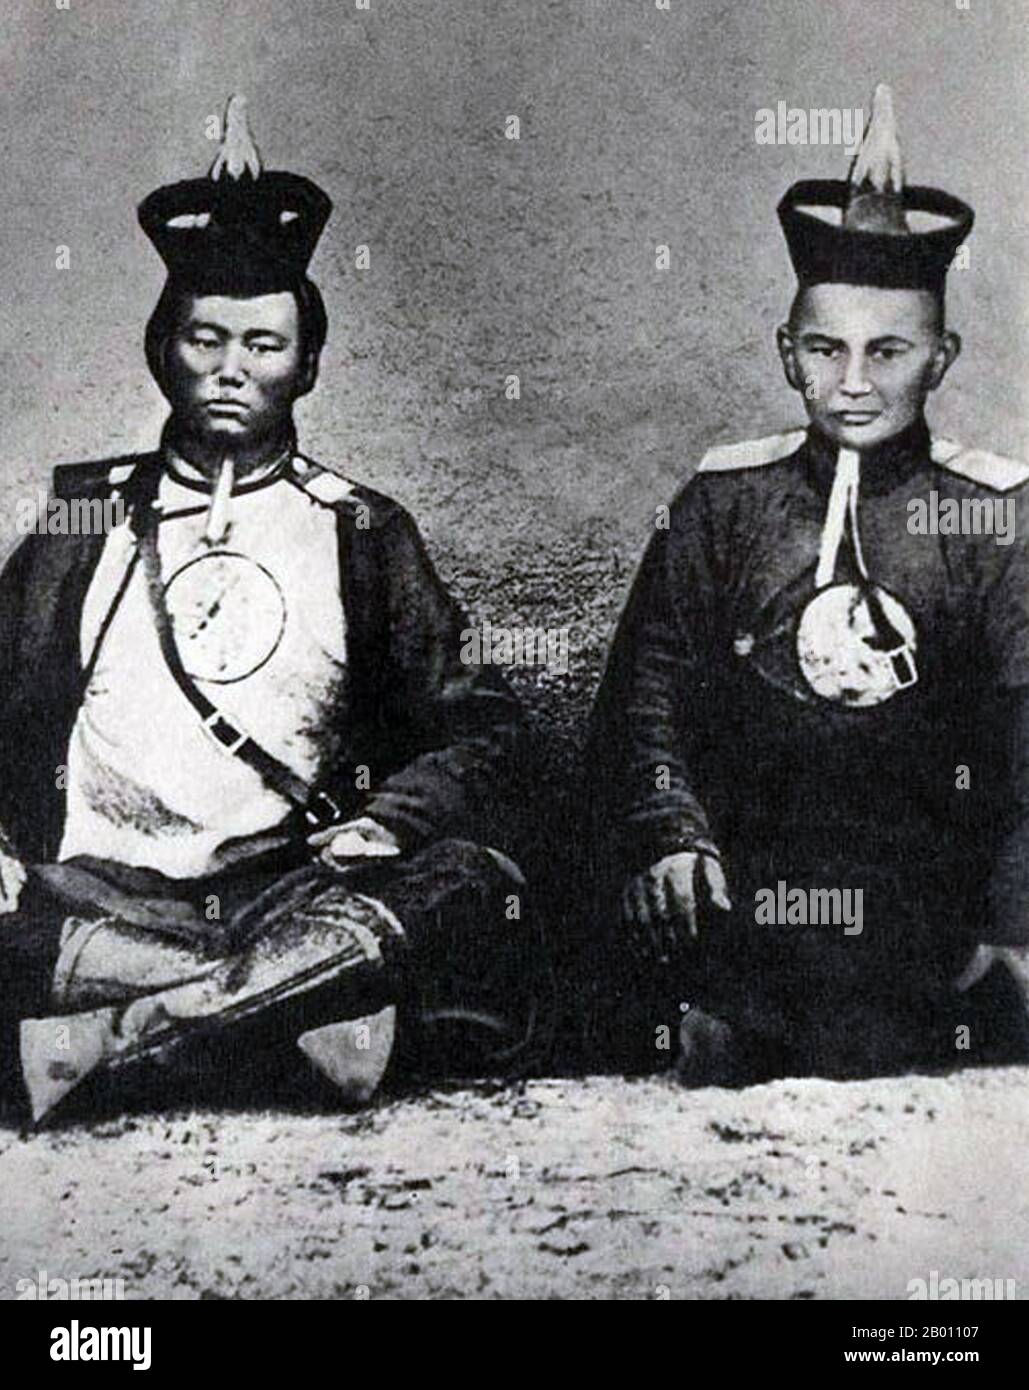 Mongolia: Dammin Sukhbaatar (sinistra, 1893-1923) mentre serviva nell'esercito del Bogd Khan mongolo. Urga (Ulan Batyaar) 1916. Damdin Sukhbaatar (Mongolia, 2 febbraio 1893 – Mongolia, 20 febbraio 1923) è stato un . 1921 È ricordato come una delle figure più importanti nella lotta per l'indipendenza della Mongolia. Foto Stock